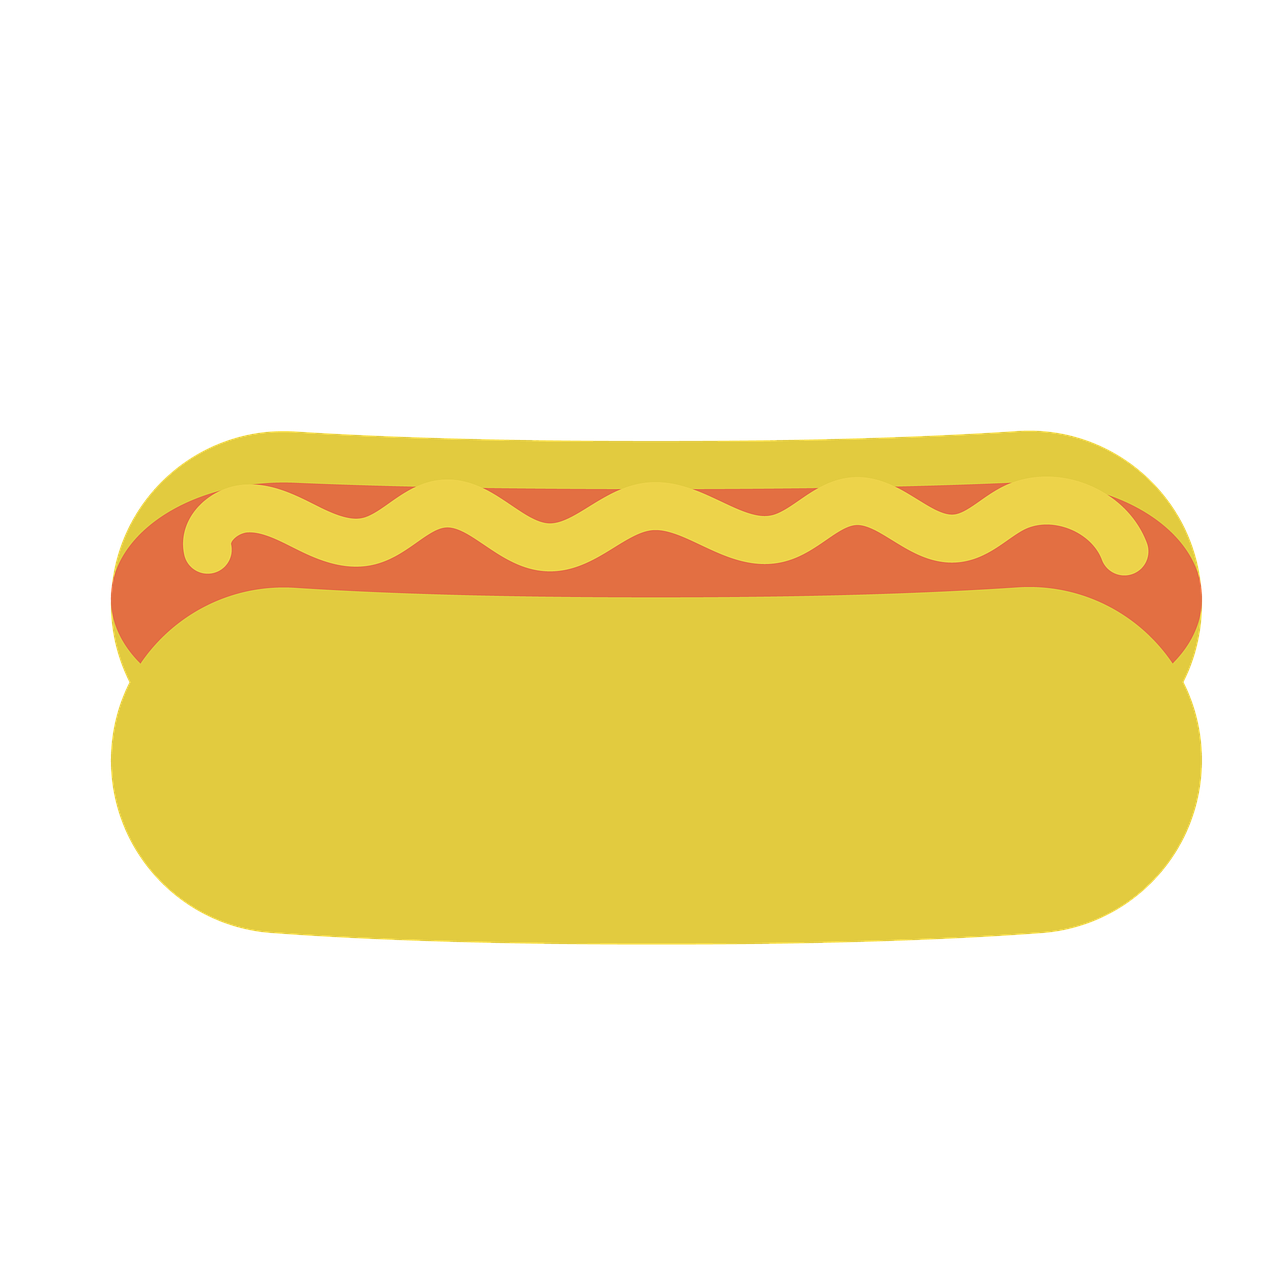 Hot Dog and Tater Bake